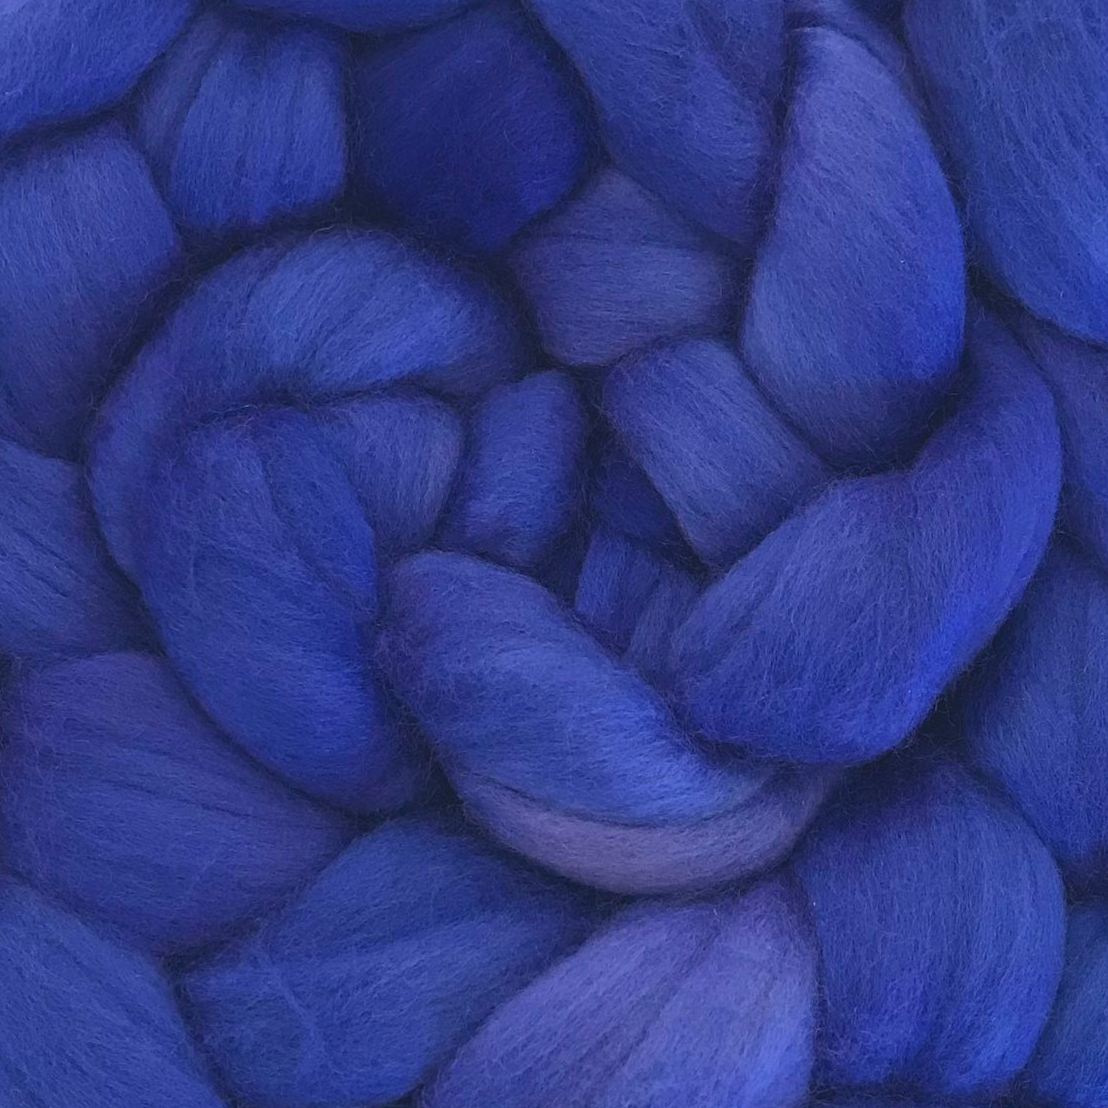 Blue-Violet